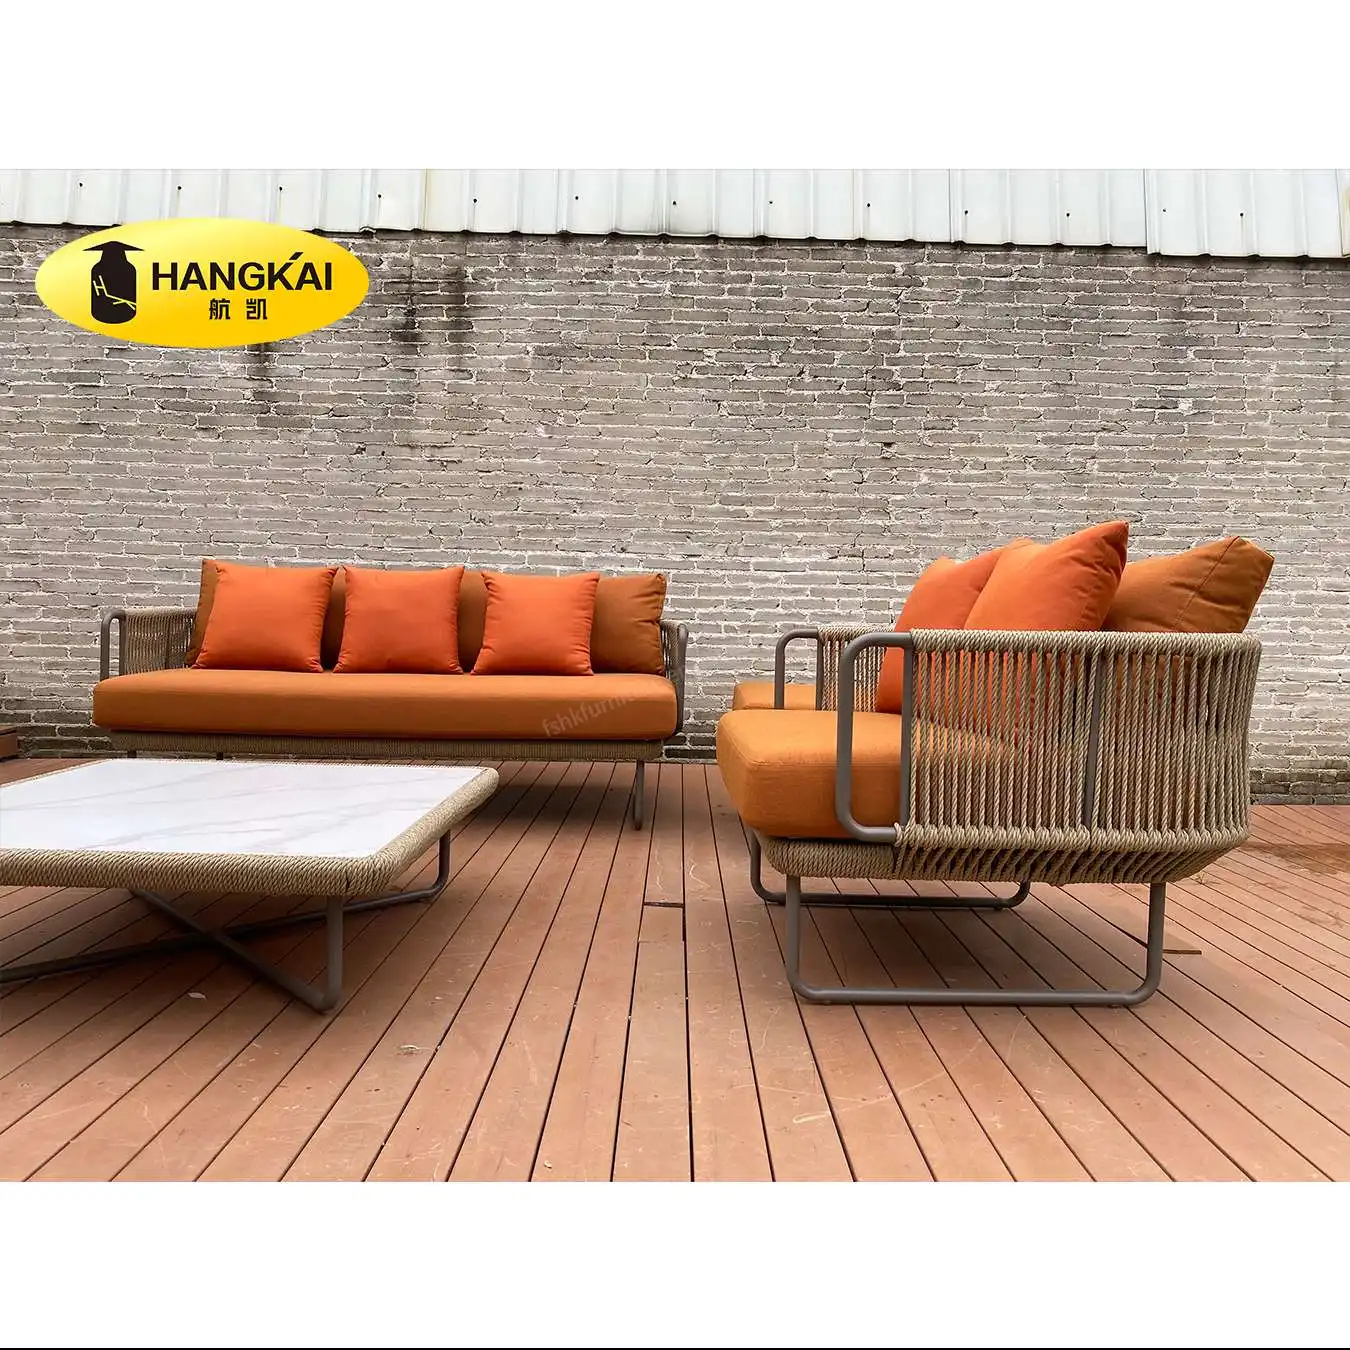 Patio furniture sets hotel patio outside aluminium furniture pool outdoor rope sofa set